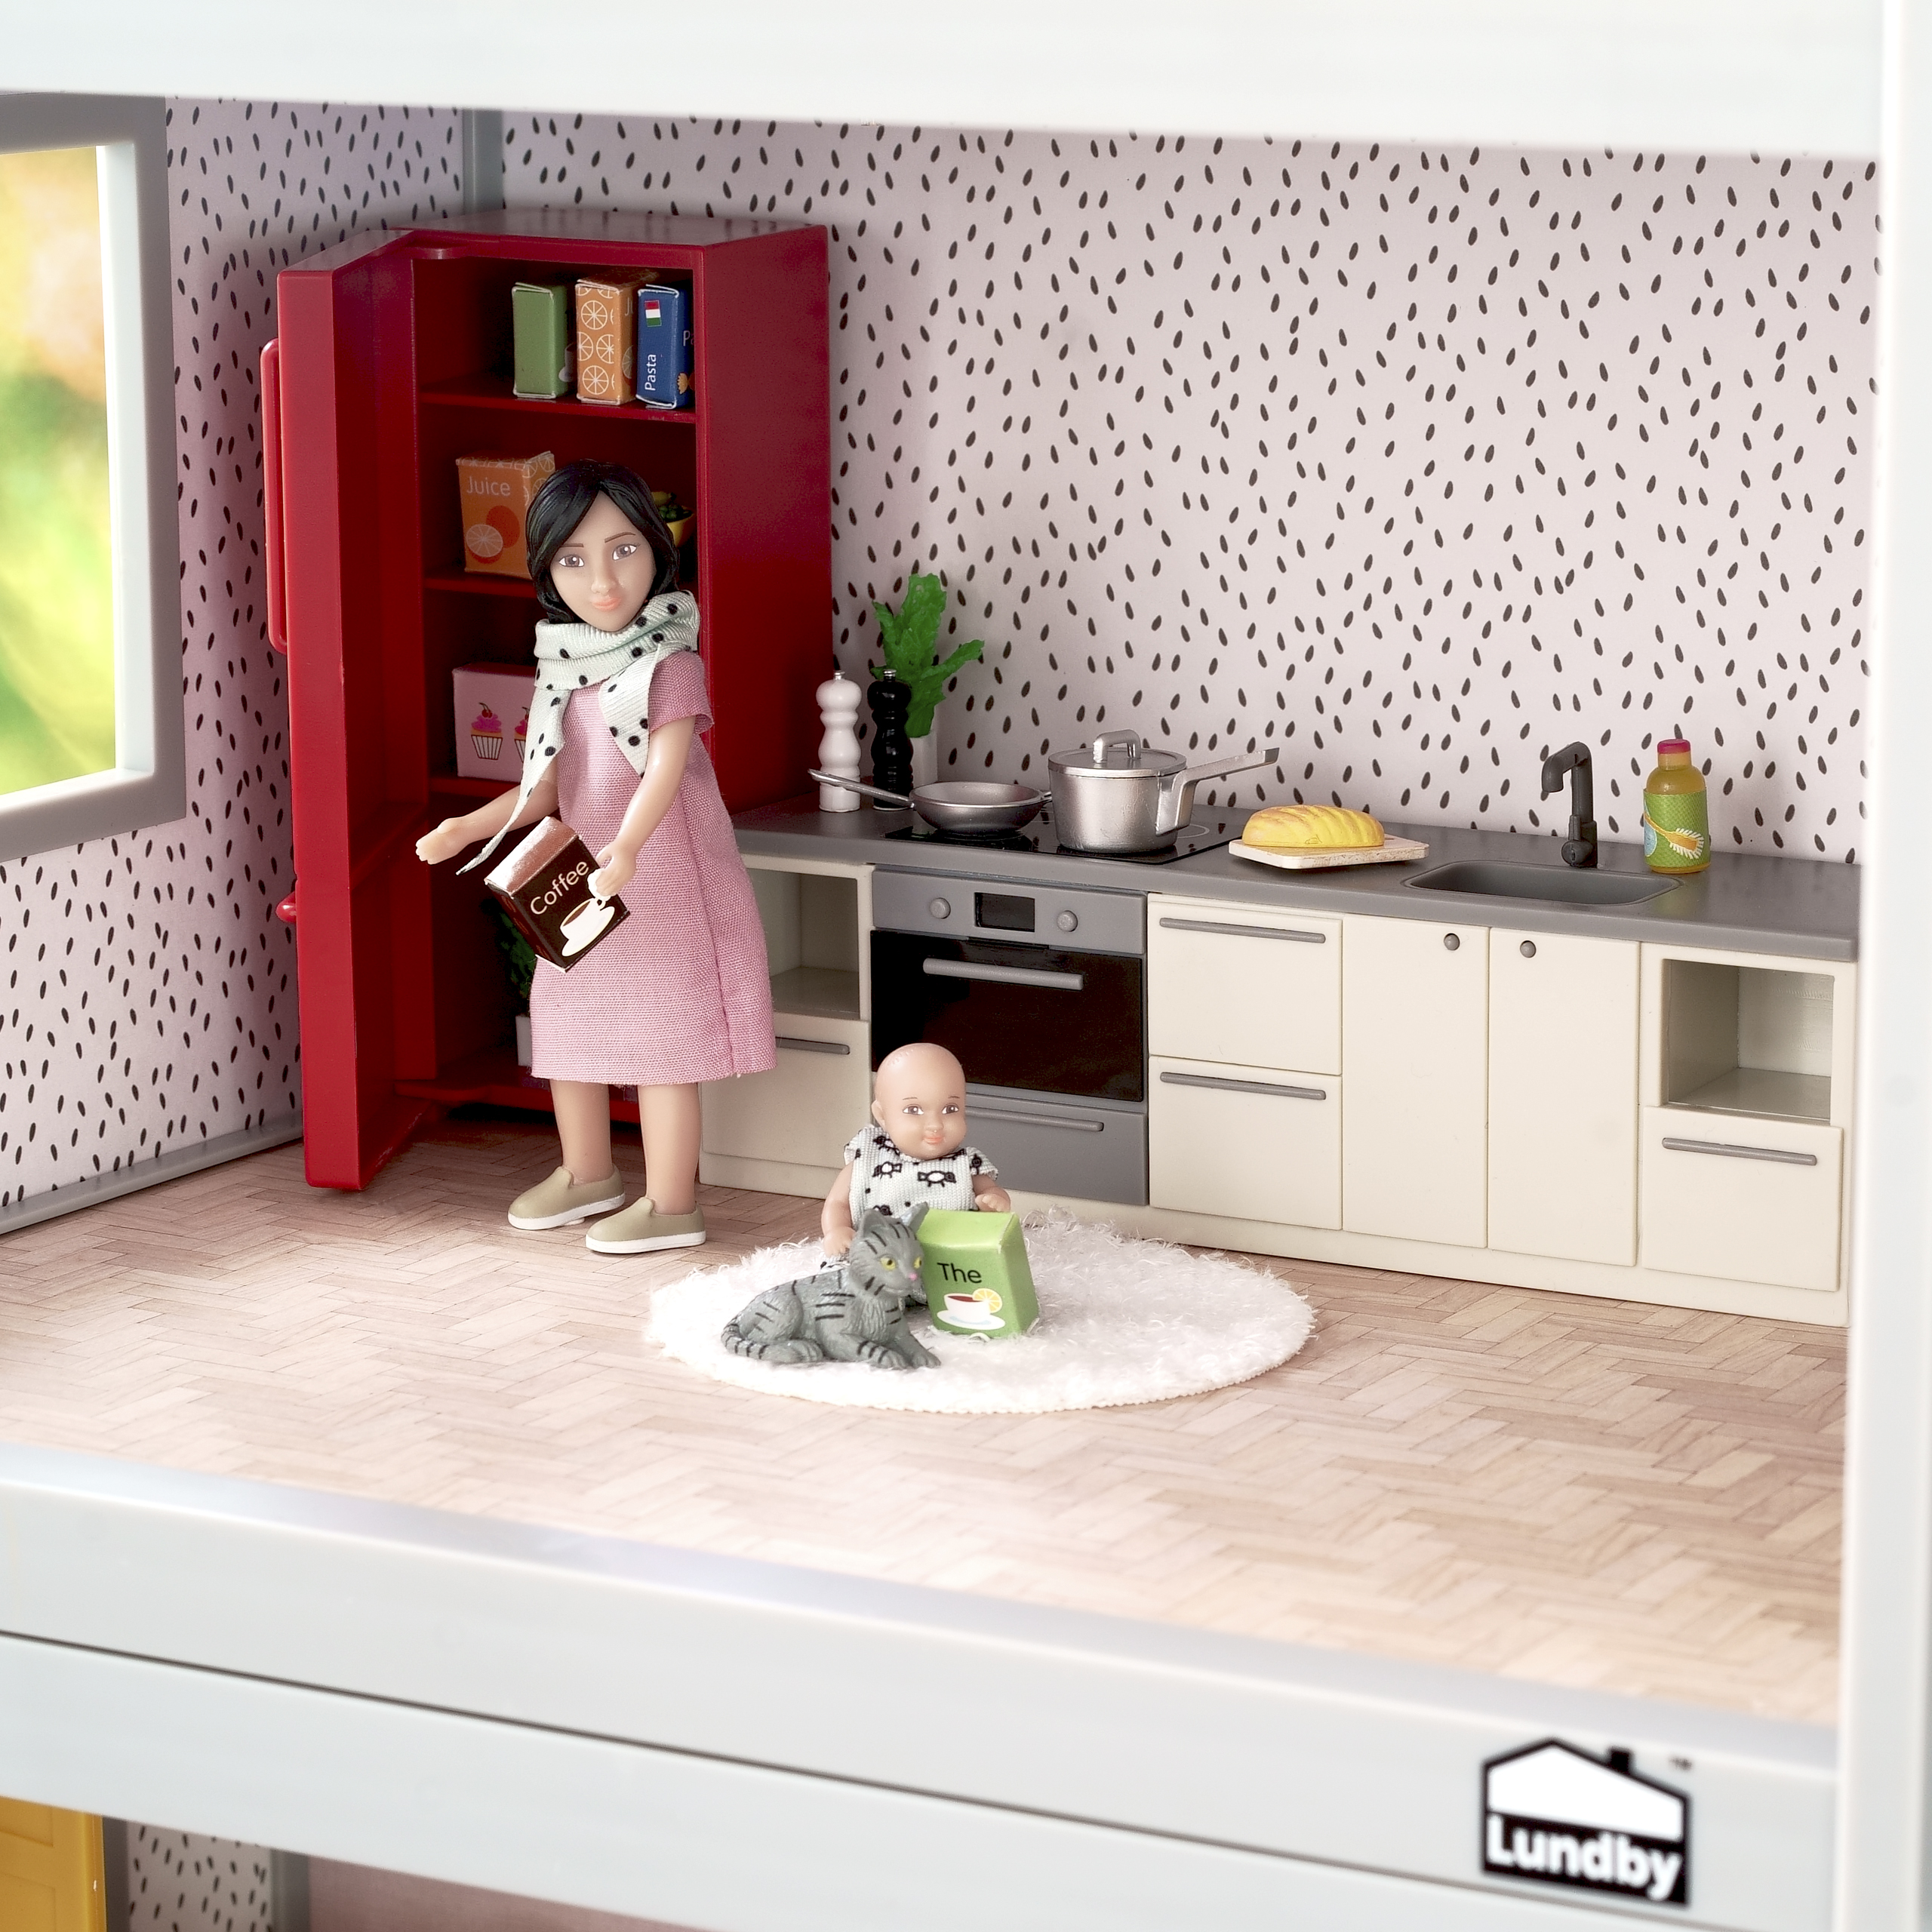 Lundby lundby puppenhausmöbel küche kühlschrank, herd & spülbecken basic